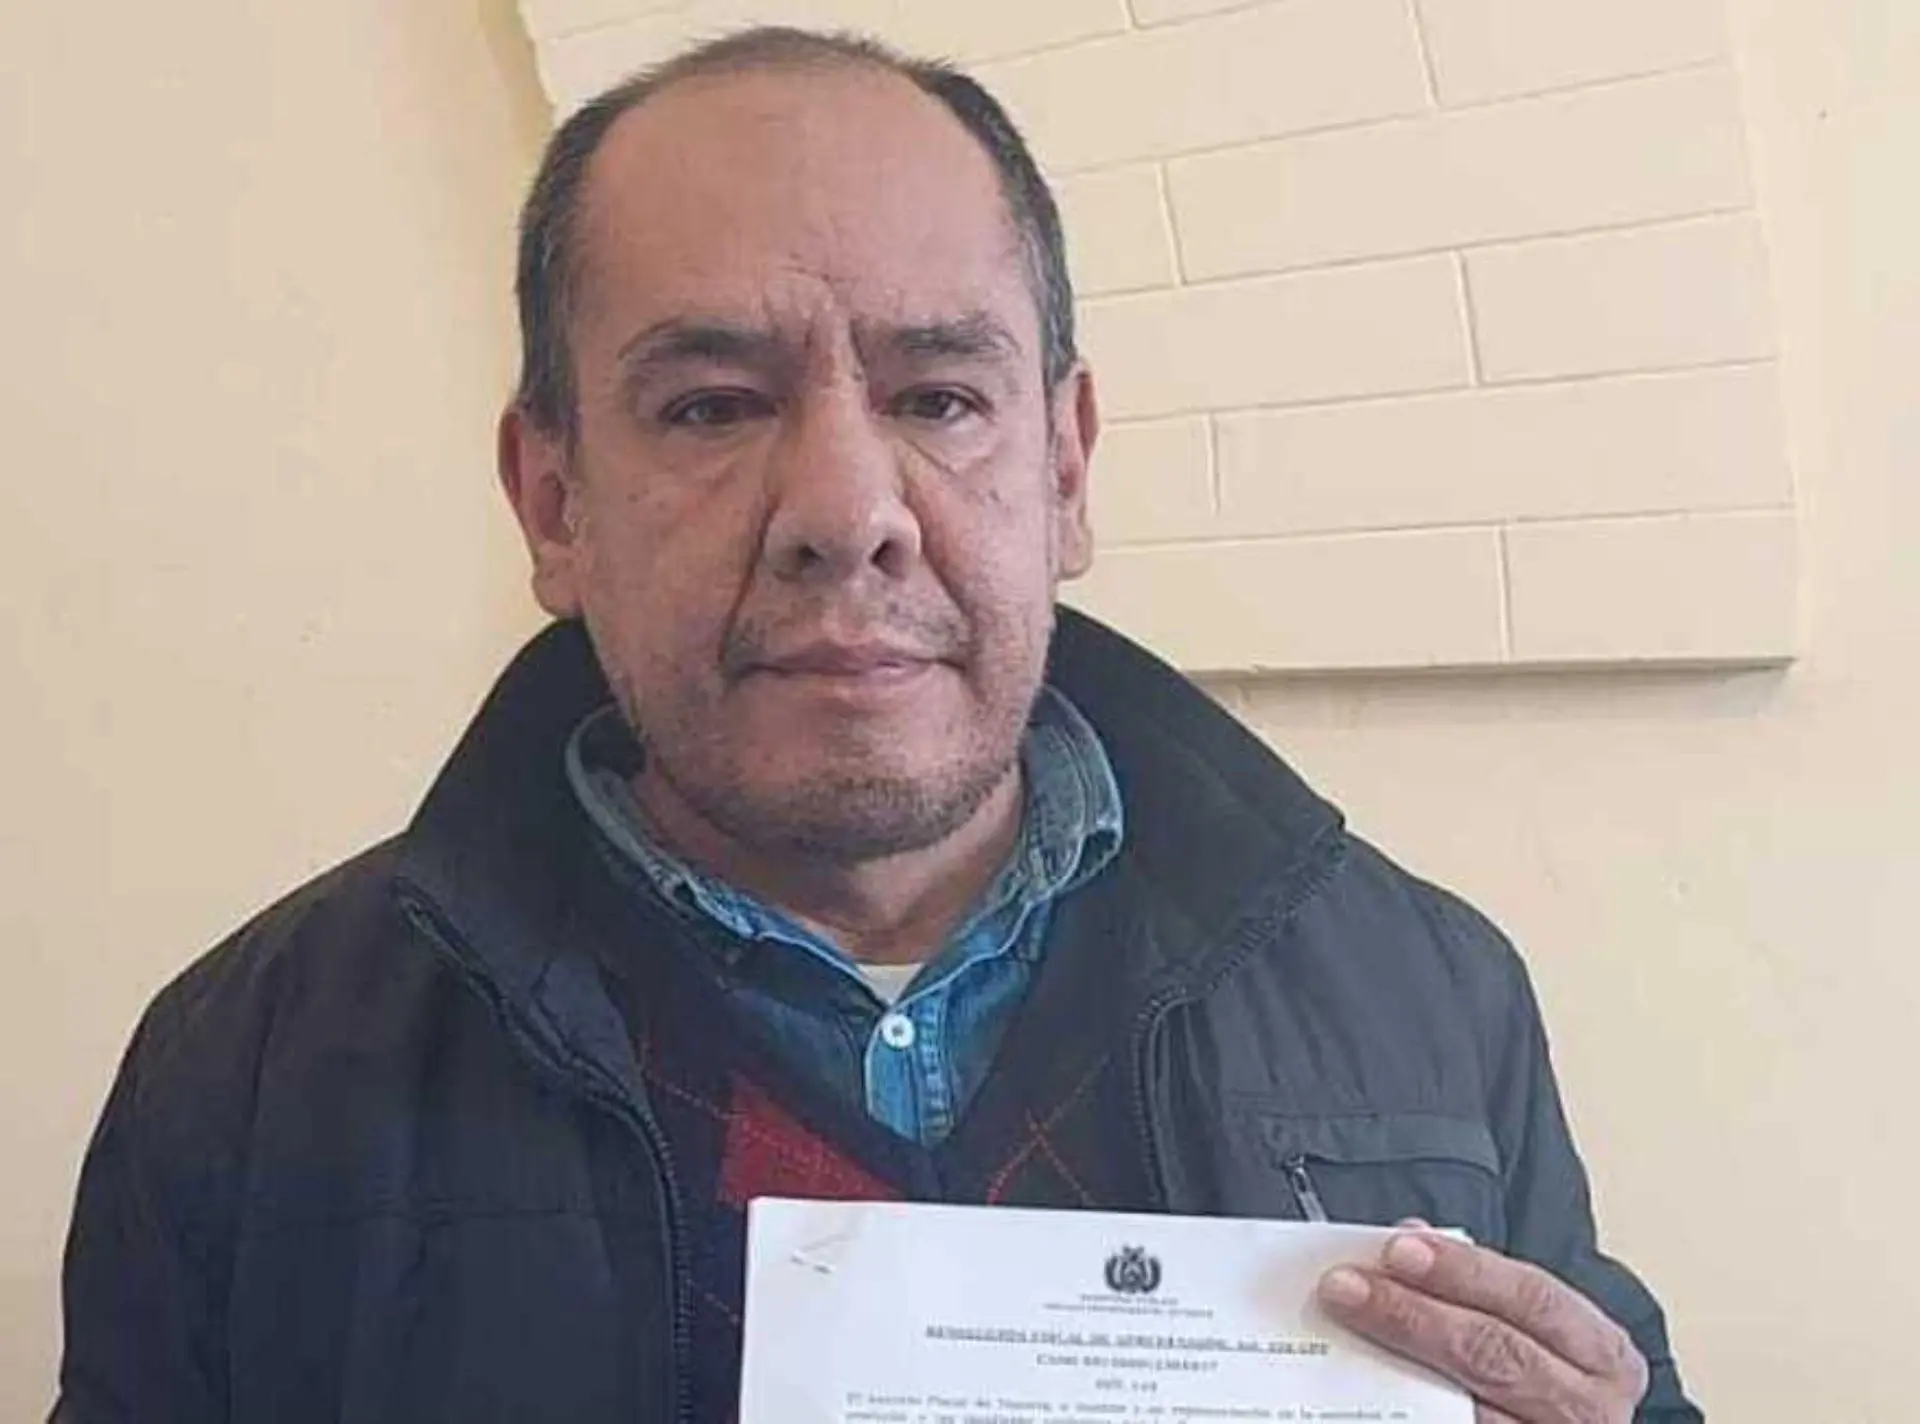 Ocho años de cárcel para un sacerdote en Bolivia por abuso sexual